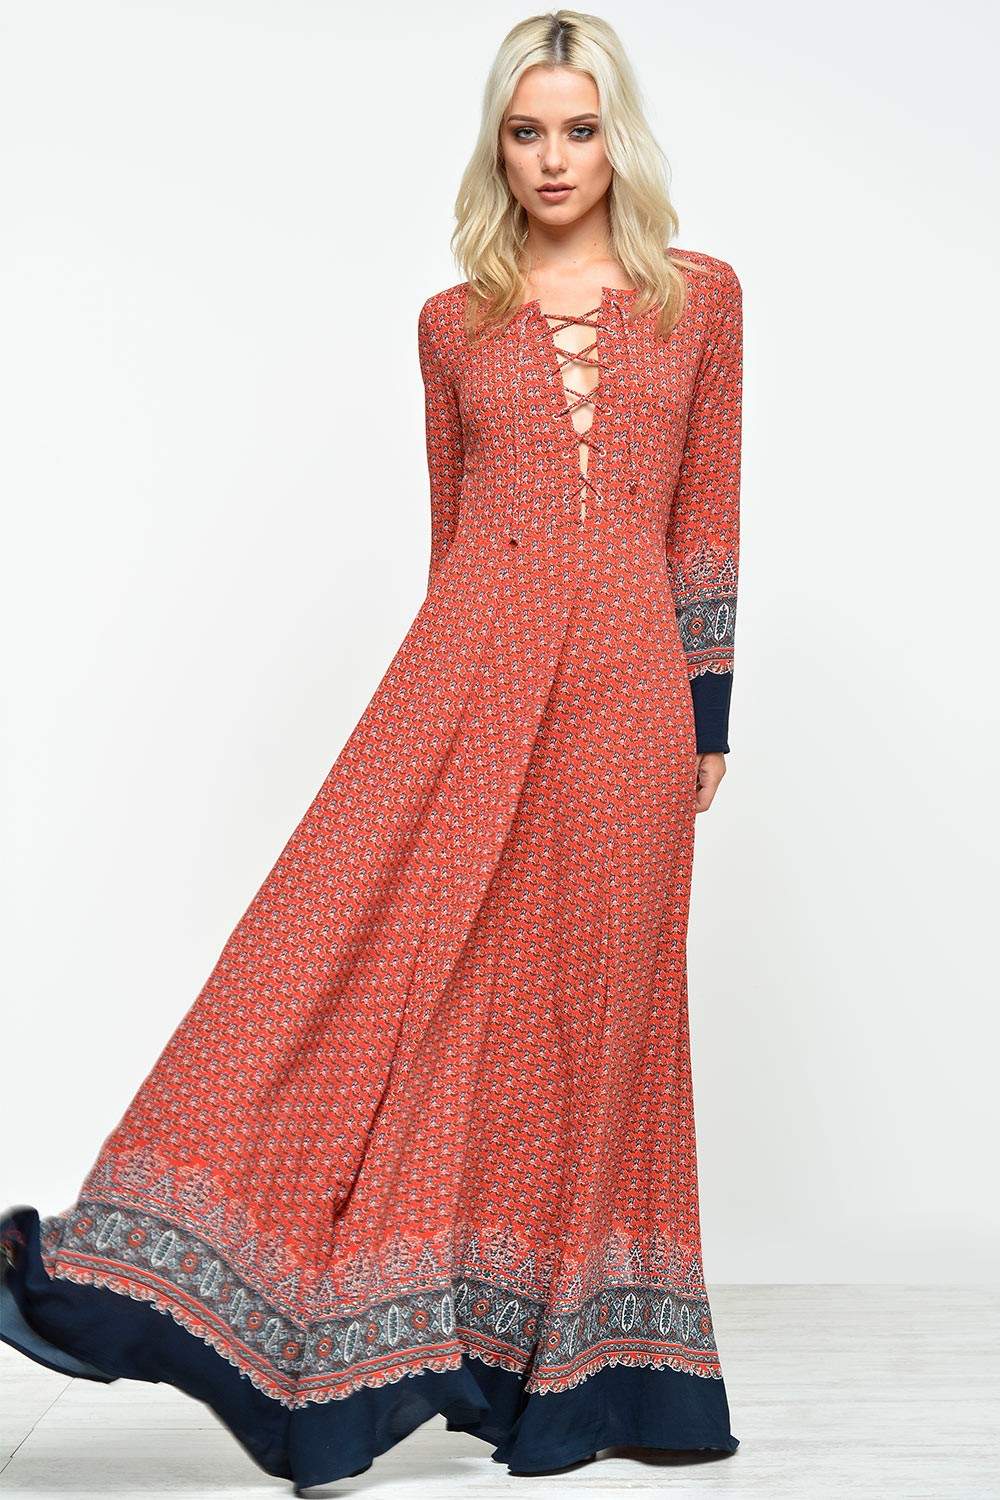 Glamorous Kate Border Print Lace Up Maxi Dress | iCLOTHING